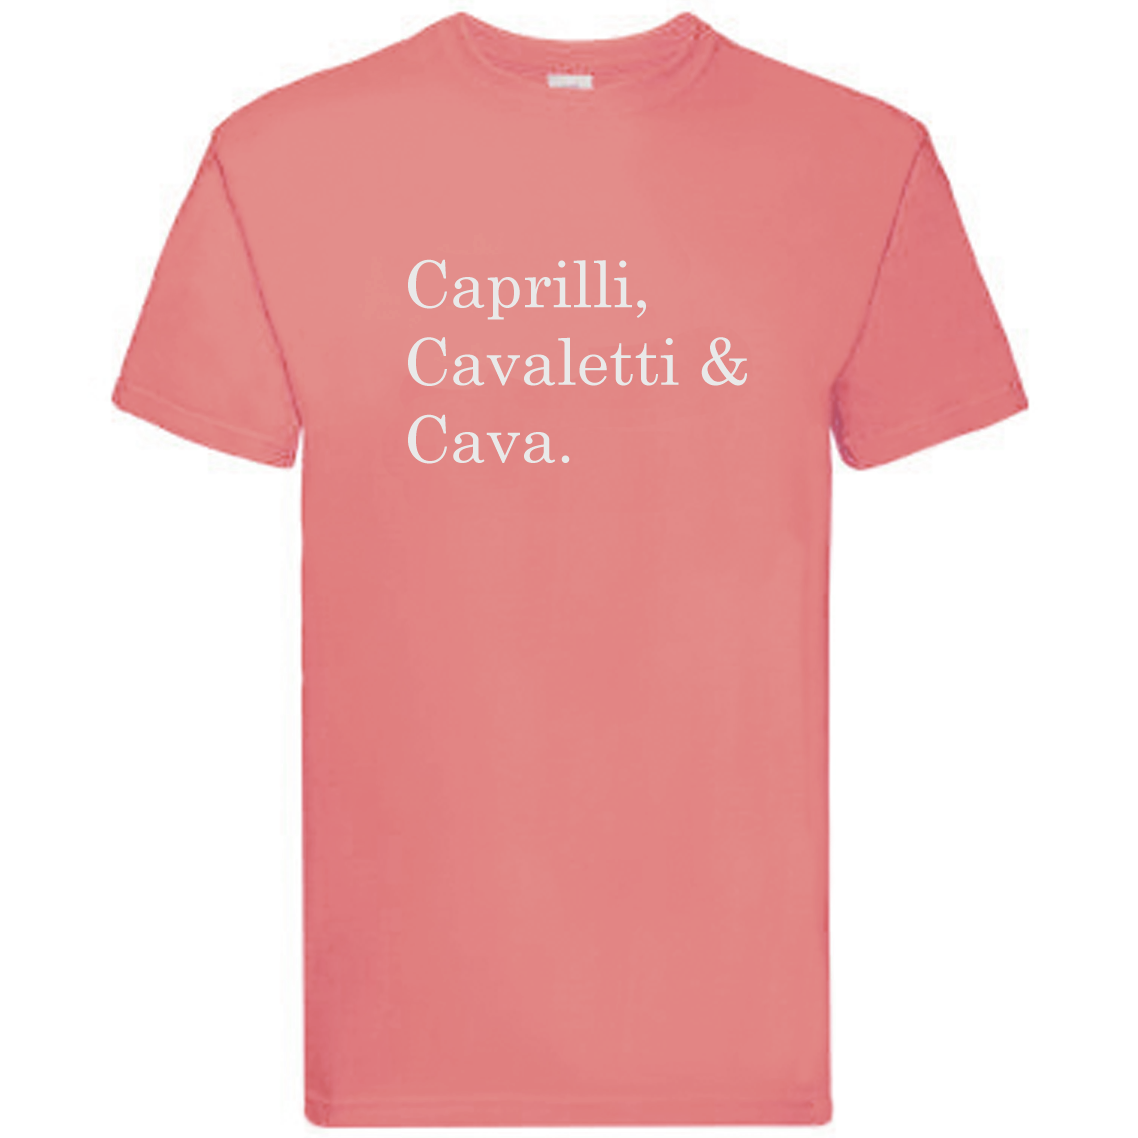 T-Shirt - "Caprilli, Cavaletti & Cava"